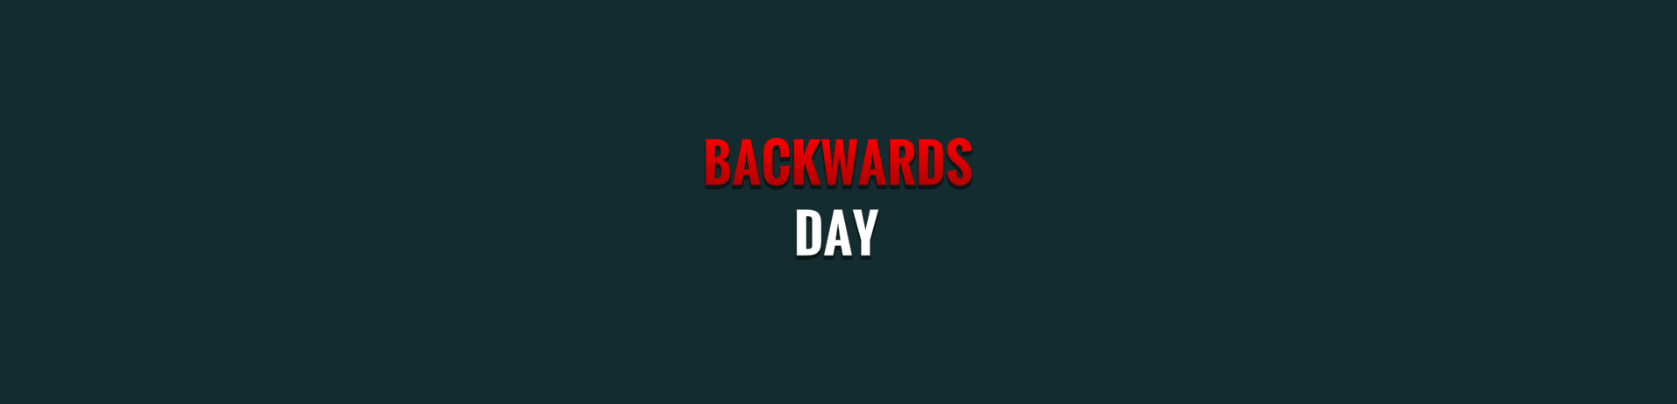 BACKWARDS DAY